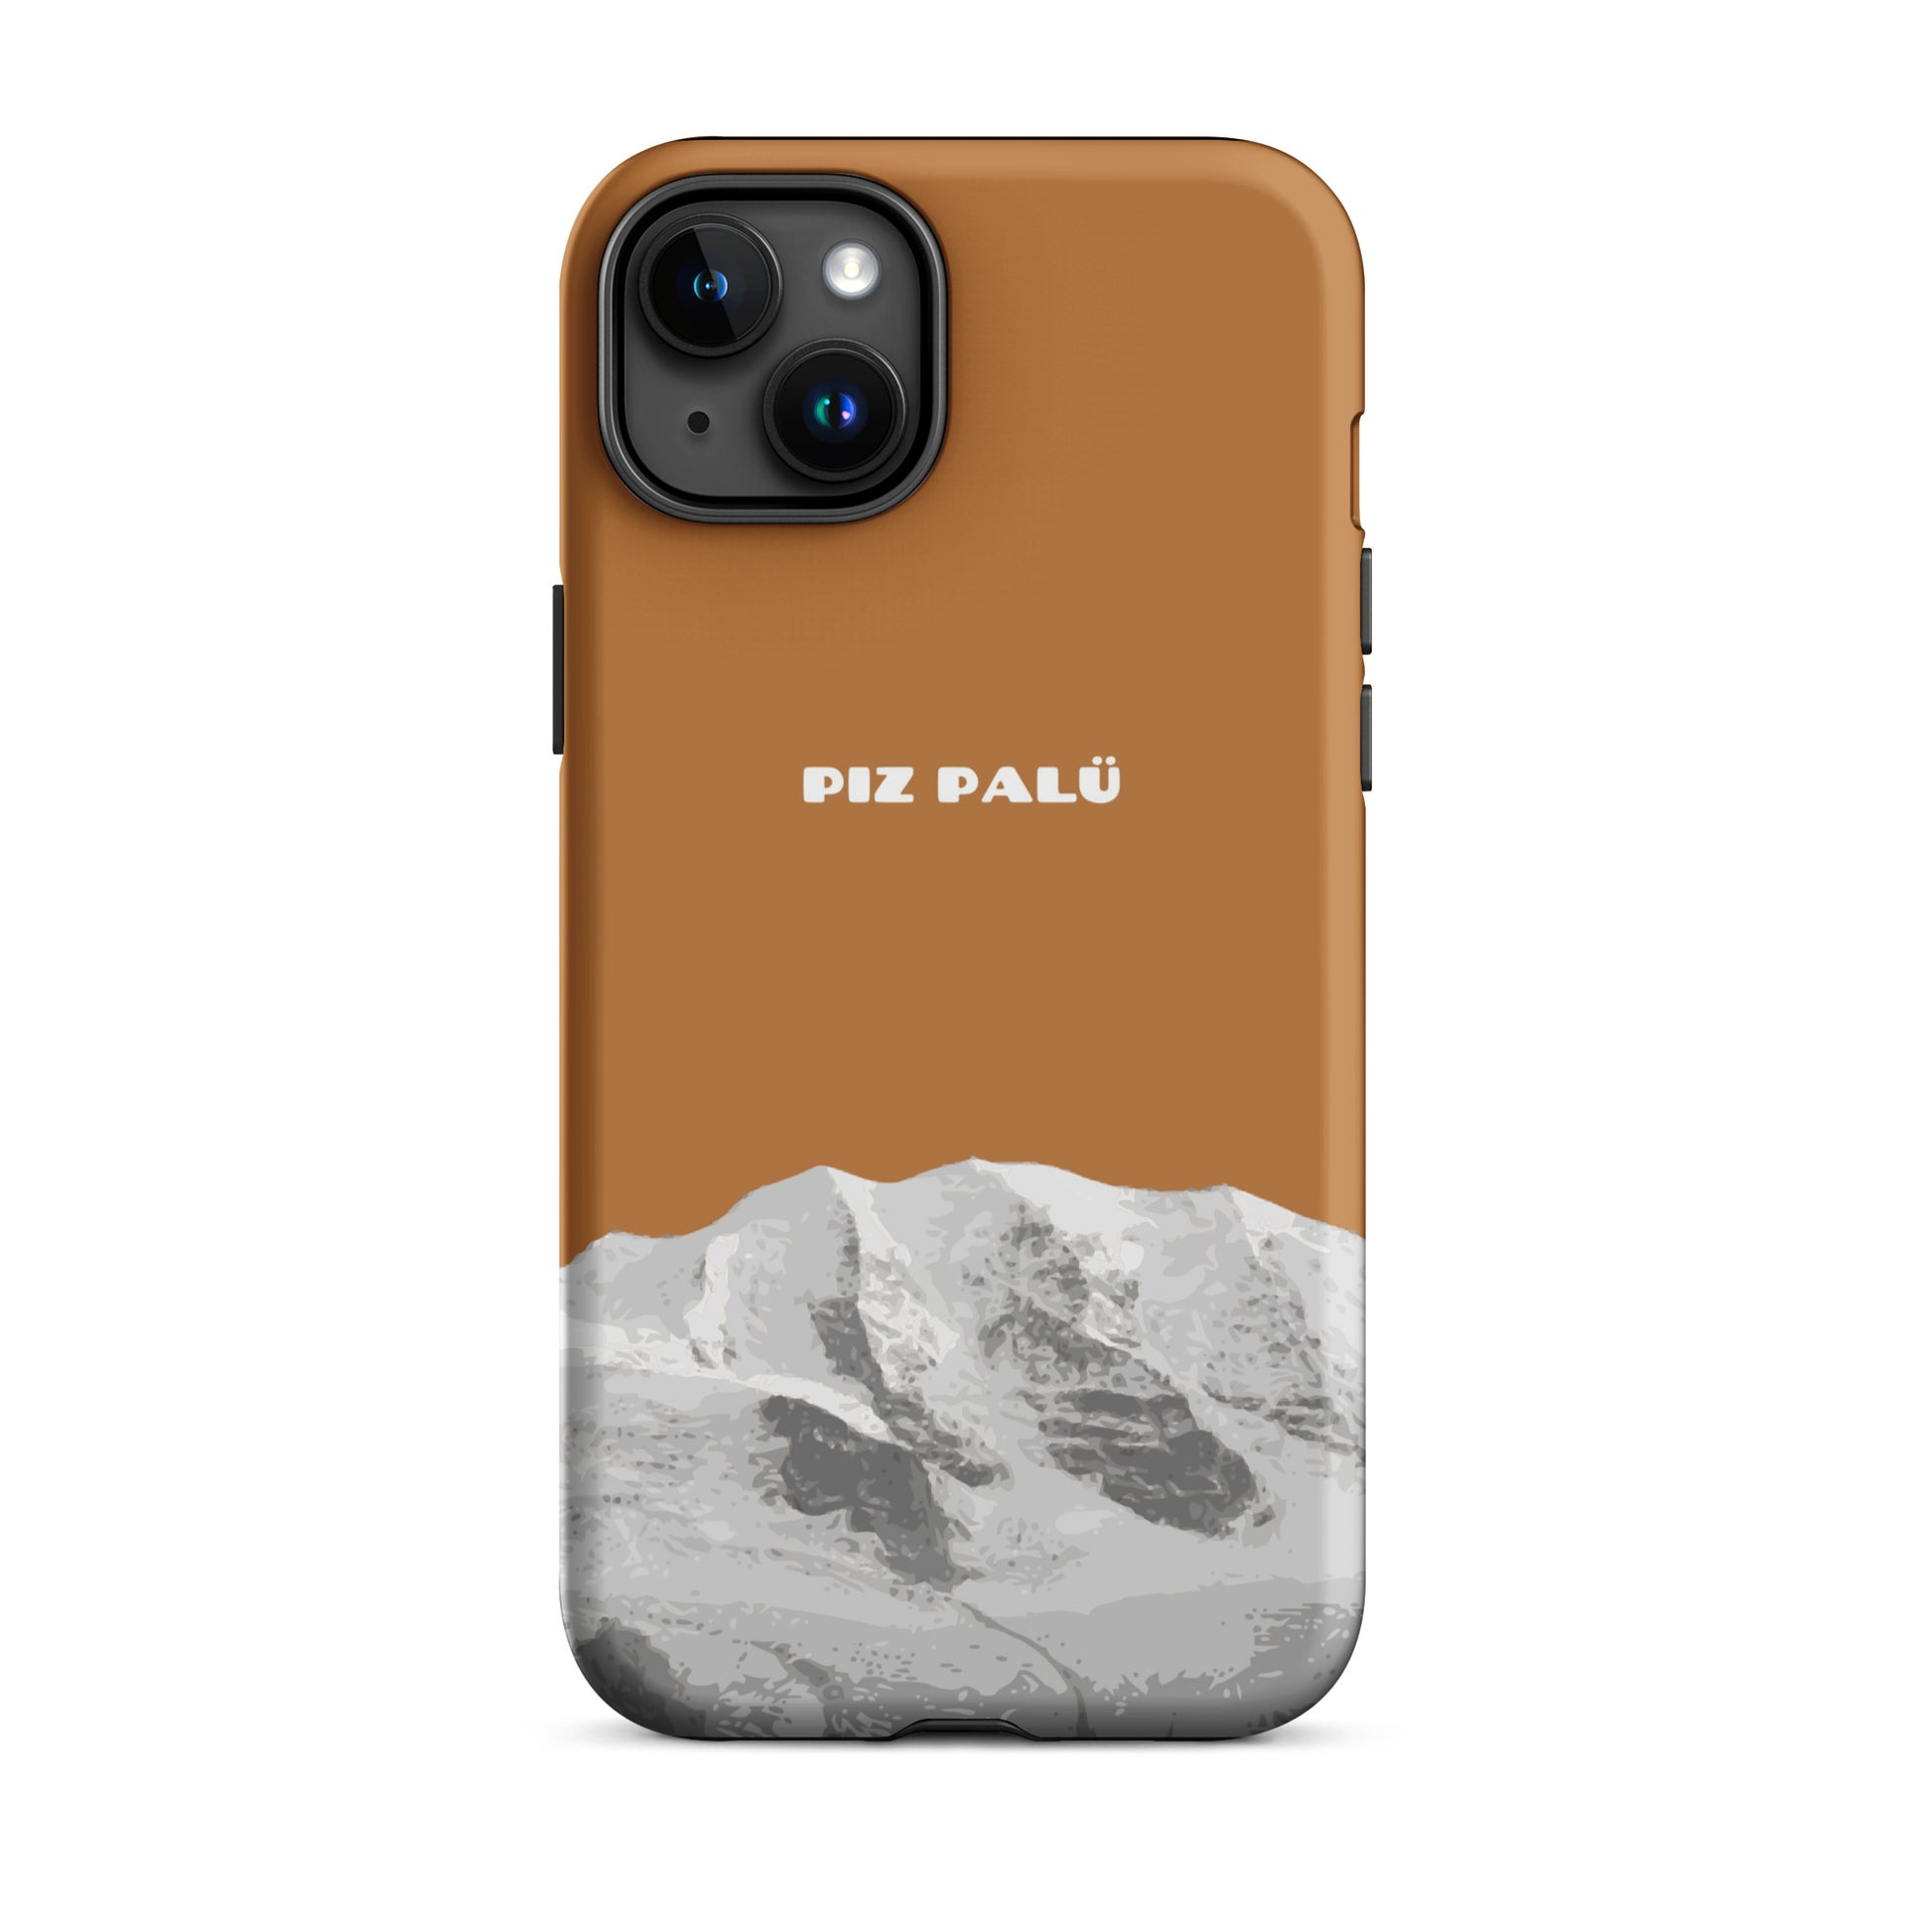 Hülle für das iPhone 15 Plus von Apple in der Farbe Kupfer, dass den Piz Palü in Graubünden zeigt.